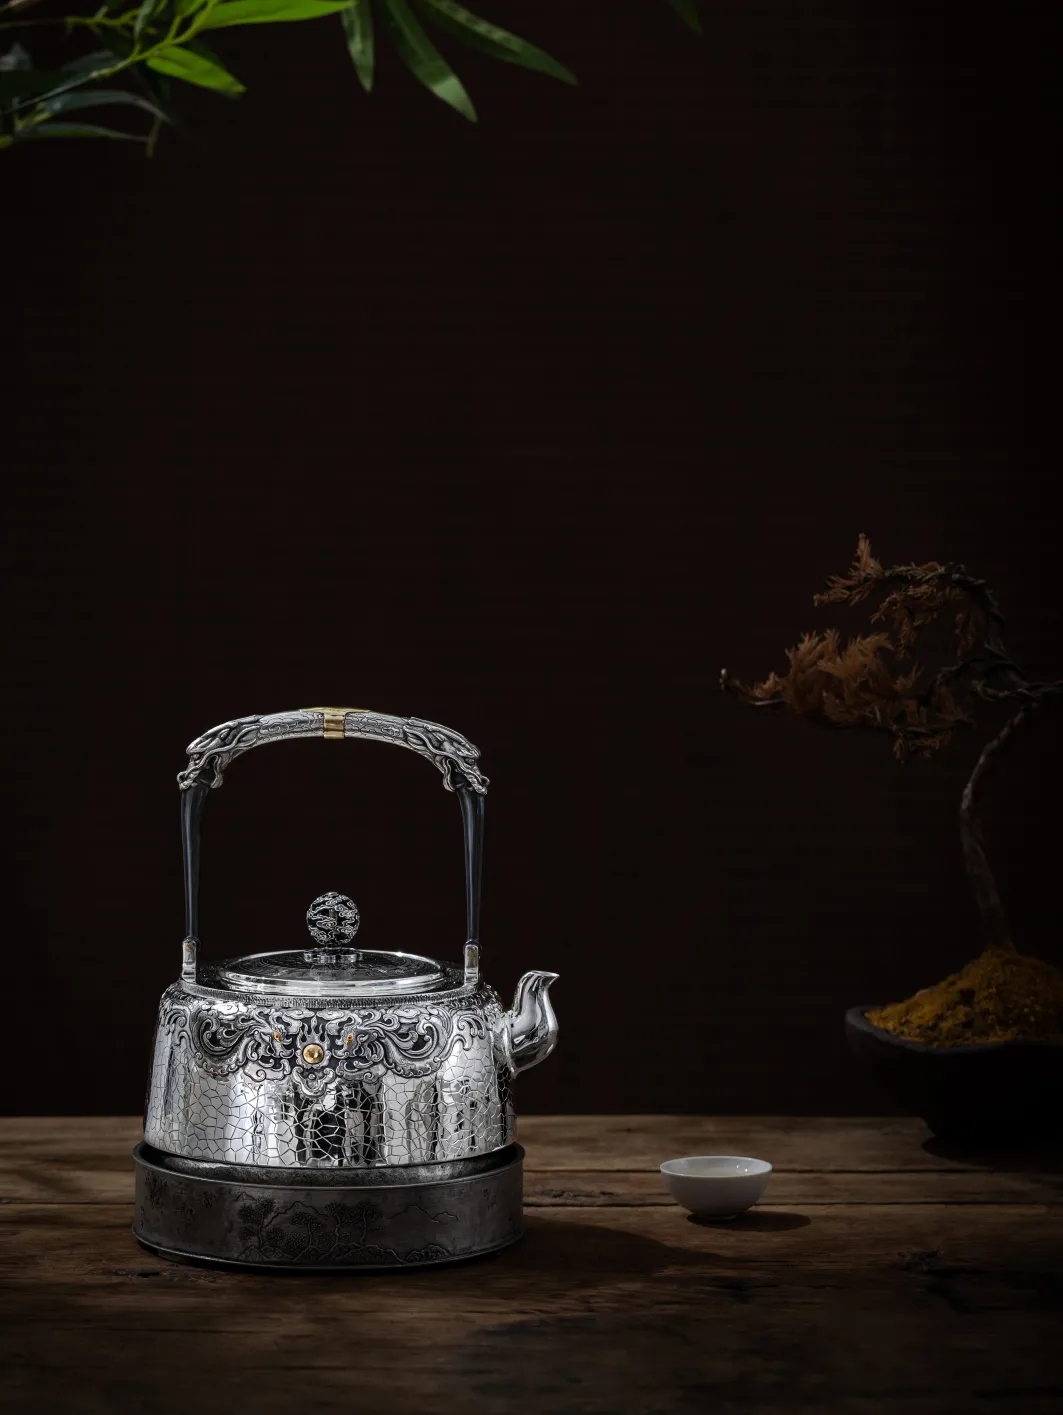 蜂鸟邀您共赏、李树坤制作之金银茶器品！